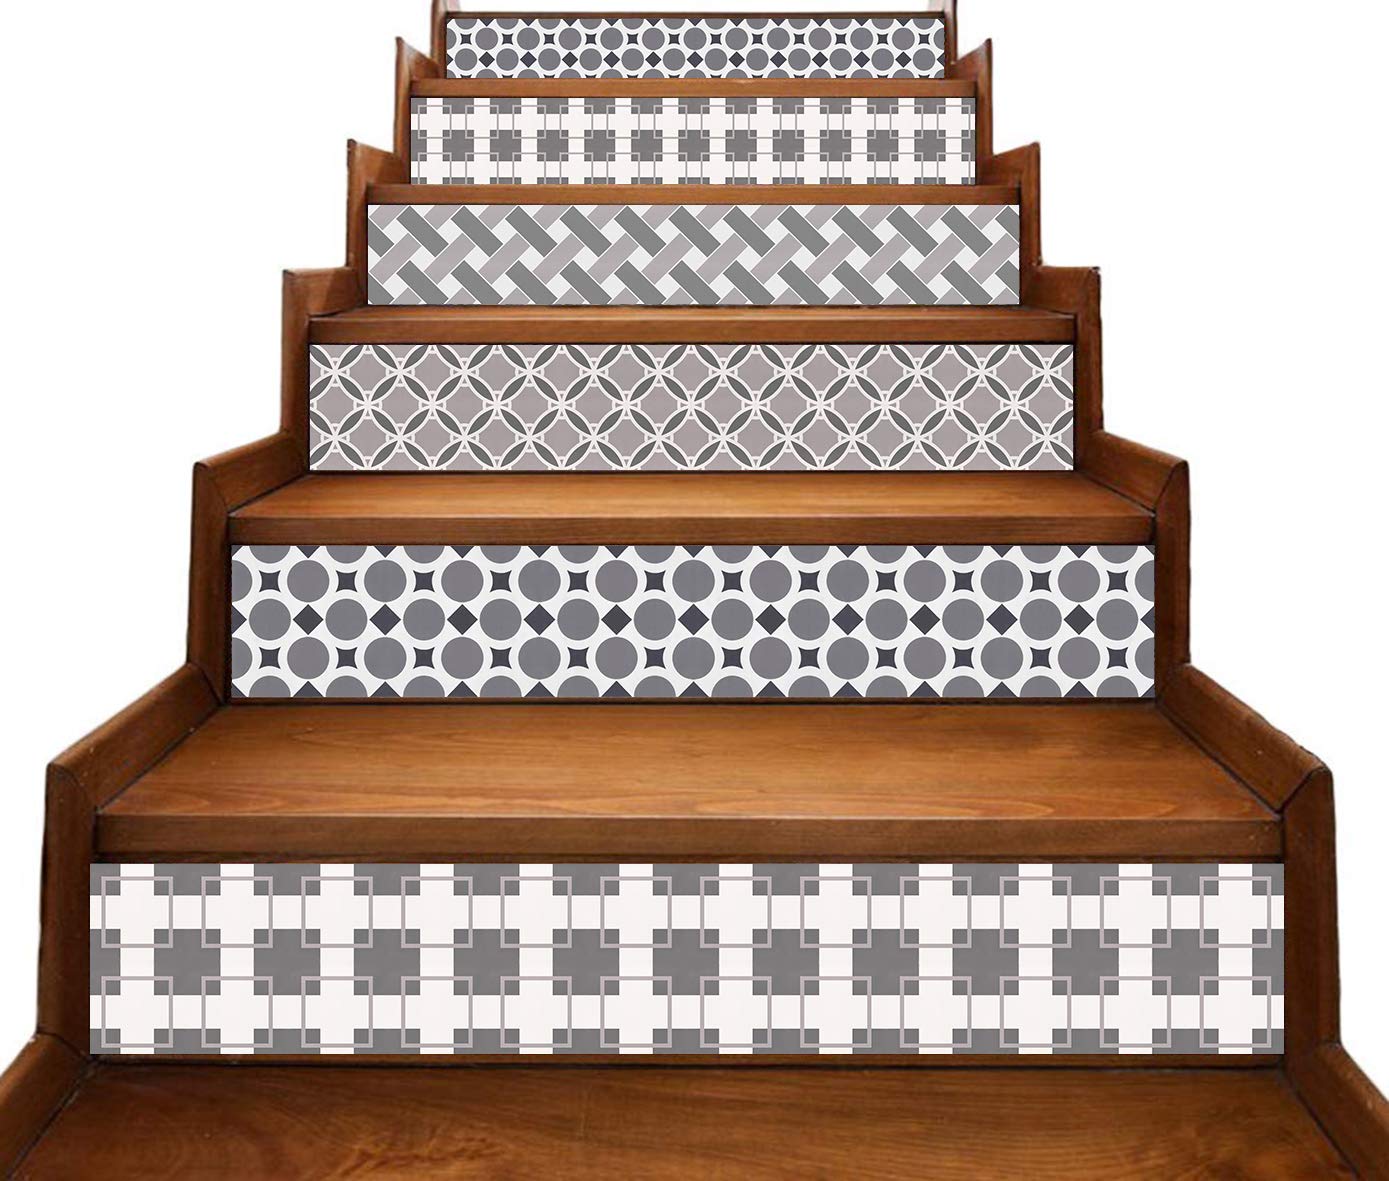 Stair Riser Decals - HD Wallpaper 